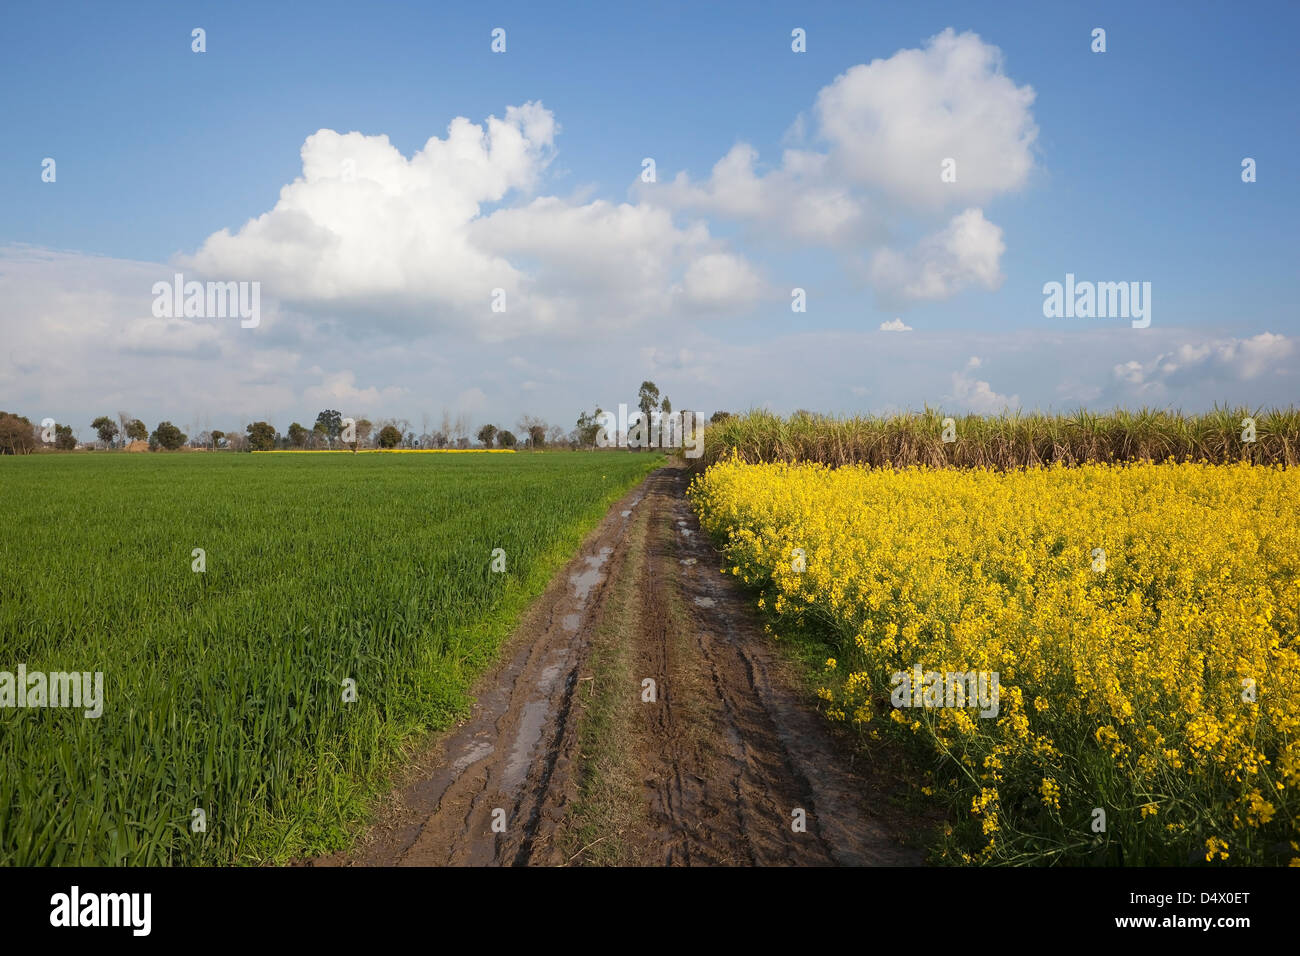 Un Punjabi paisaje con nubes en un cielo azul sobre una pista fangosa entre campos de trigo, caña de azúcar y flores de color amarillo mostaza. Foto de stock